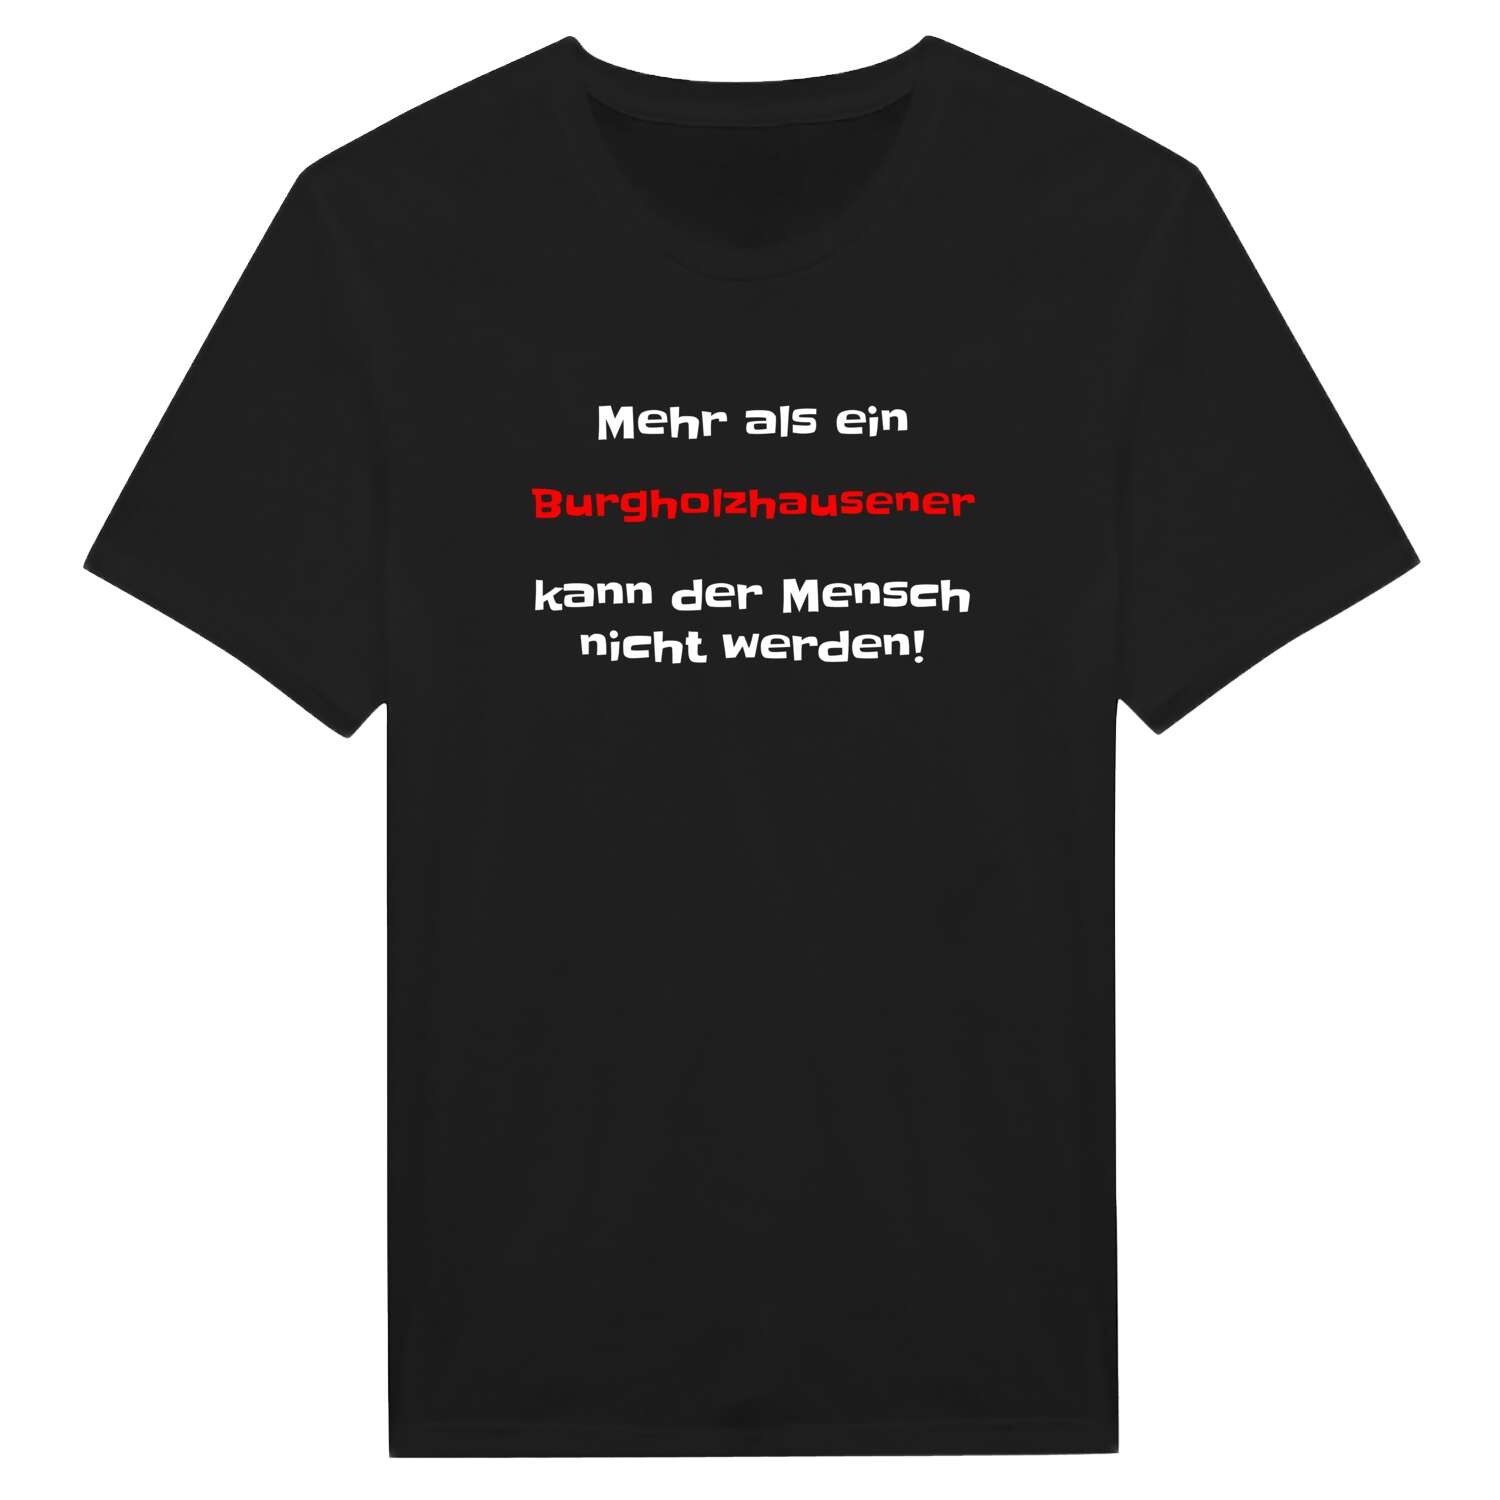 Burgholzhausen T-Shirt »Mehr als ein«